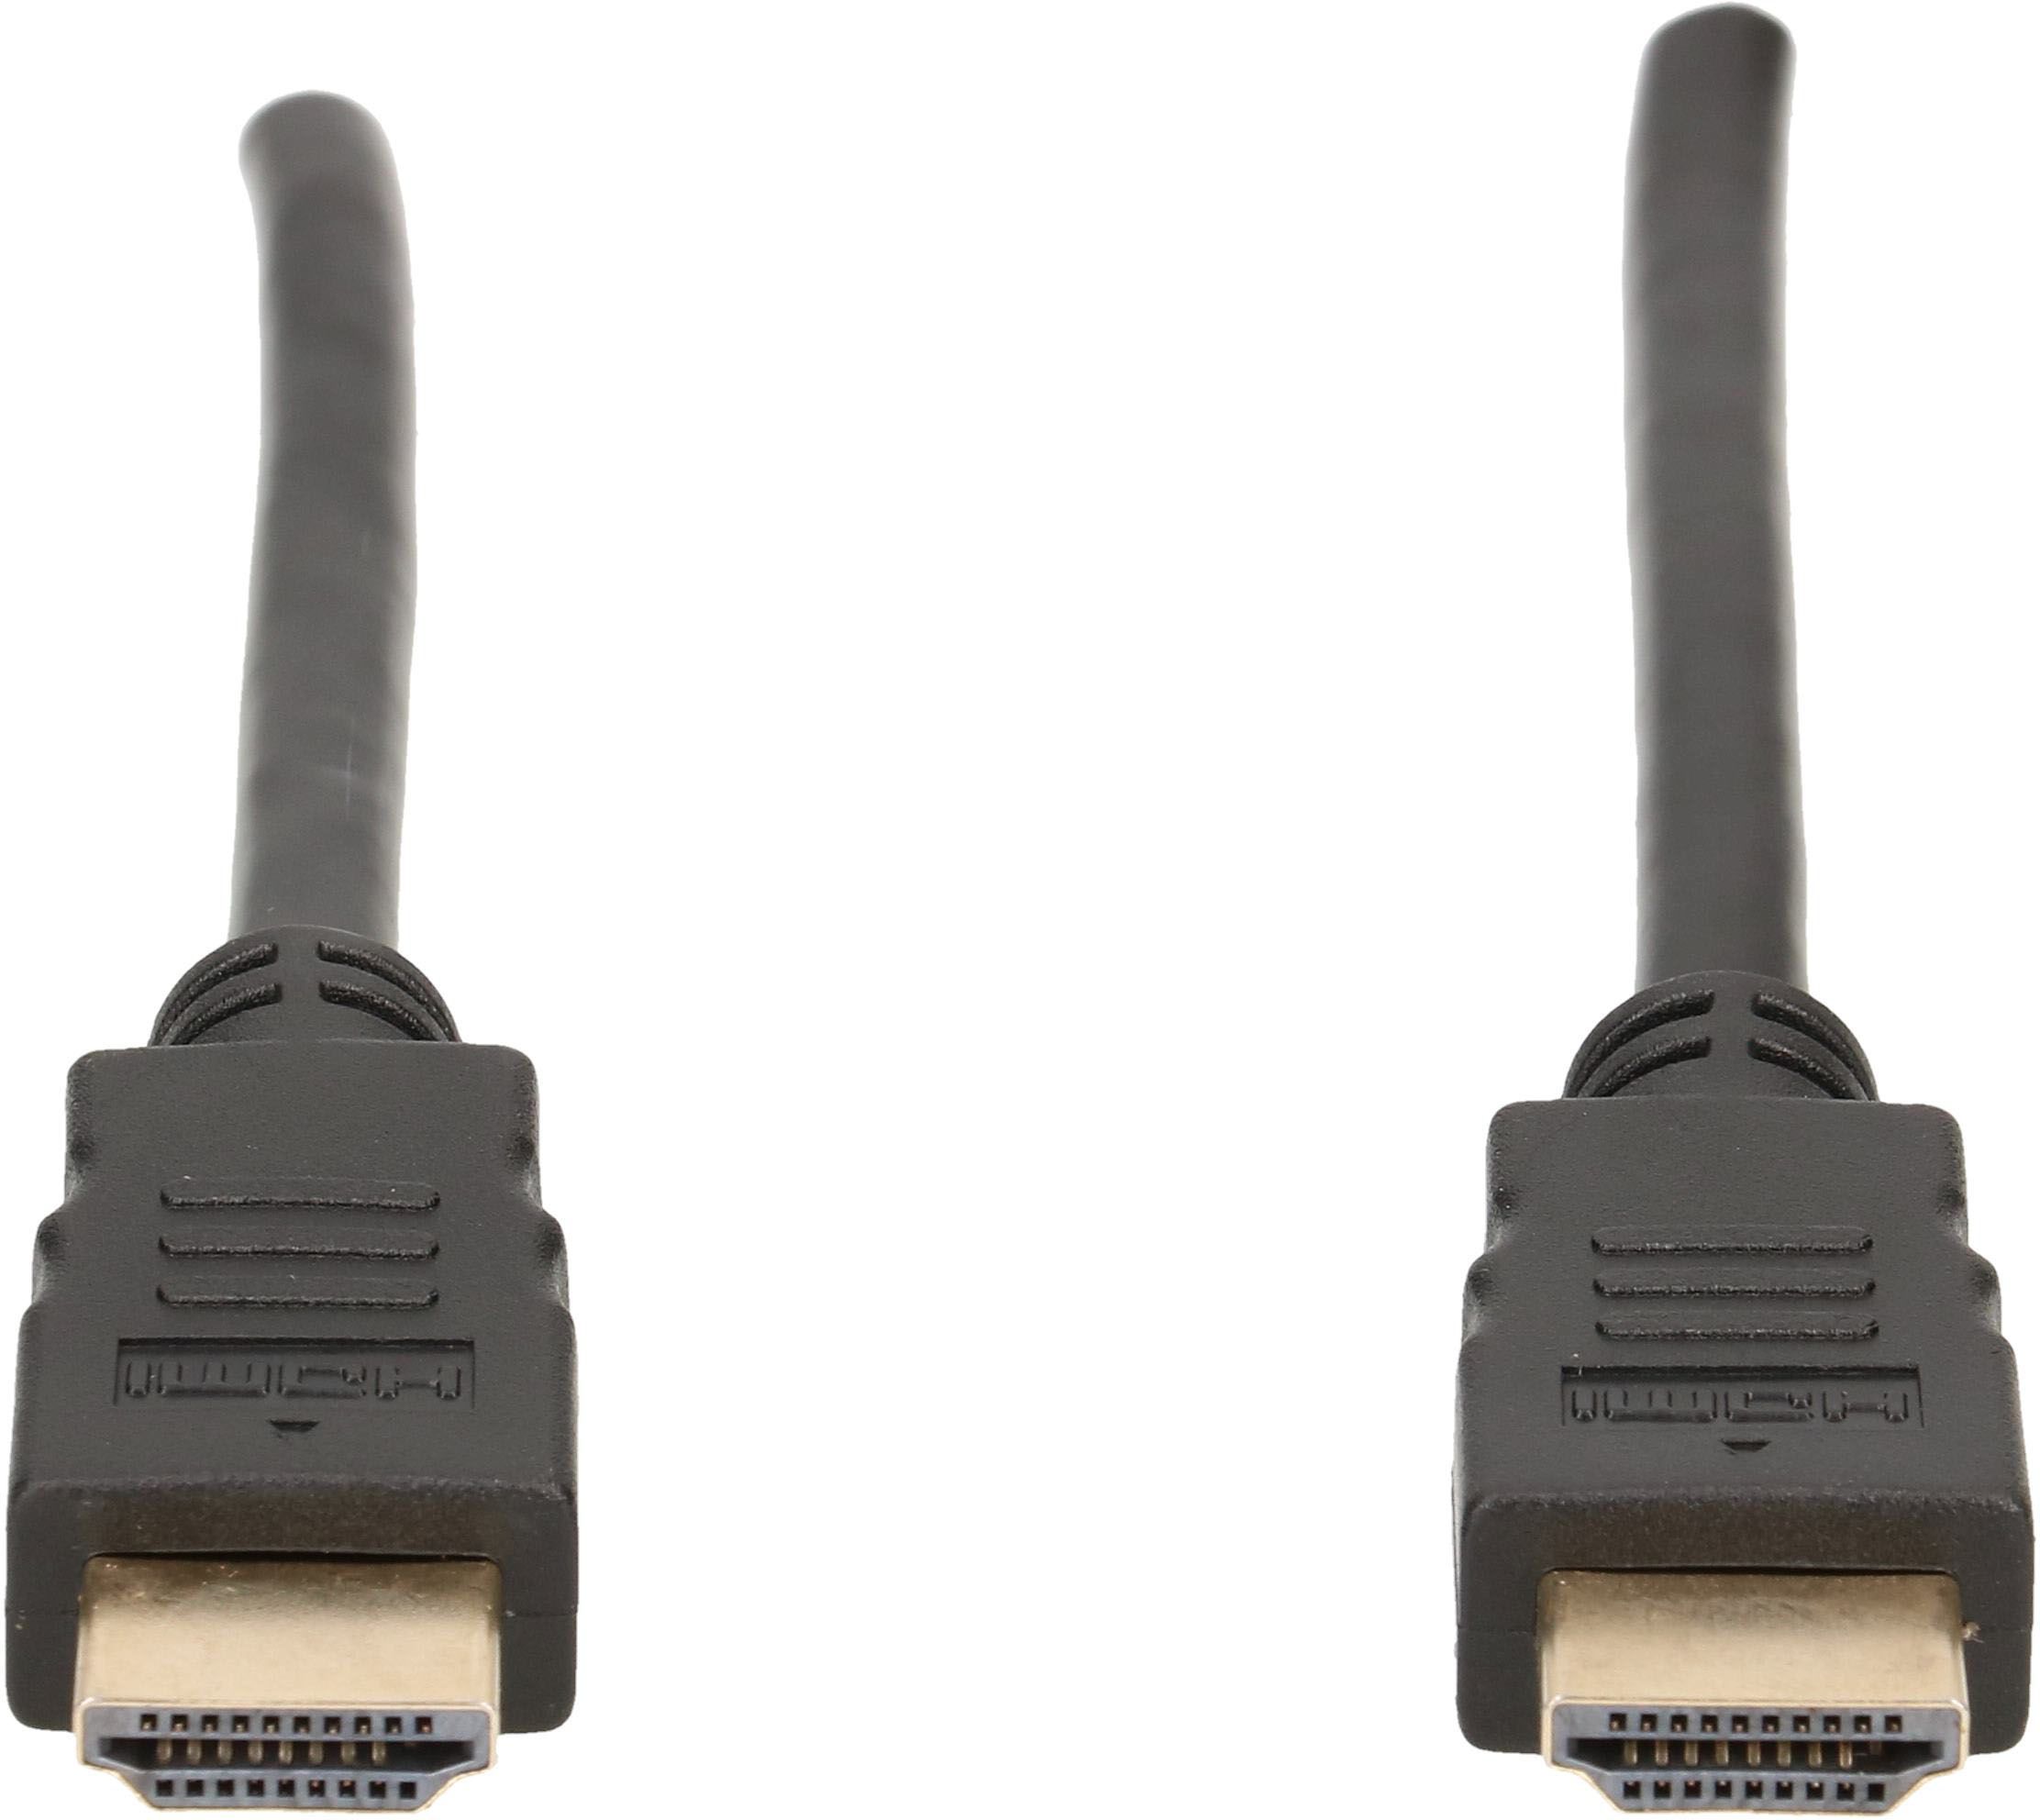 HDMI-Anschlusskabel 1.3m schwarz